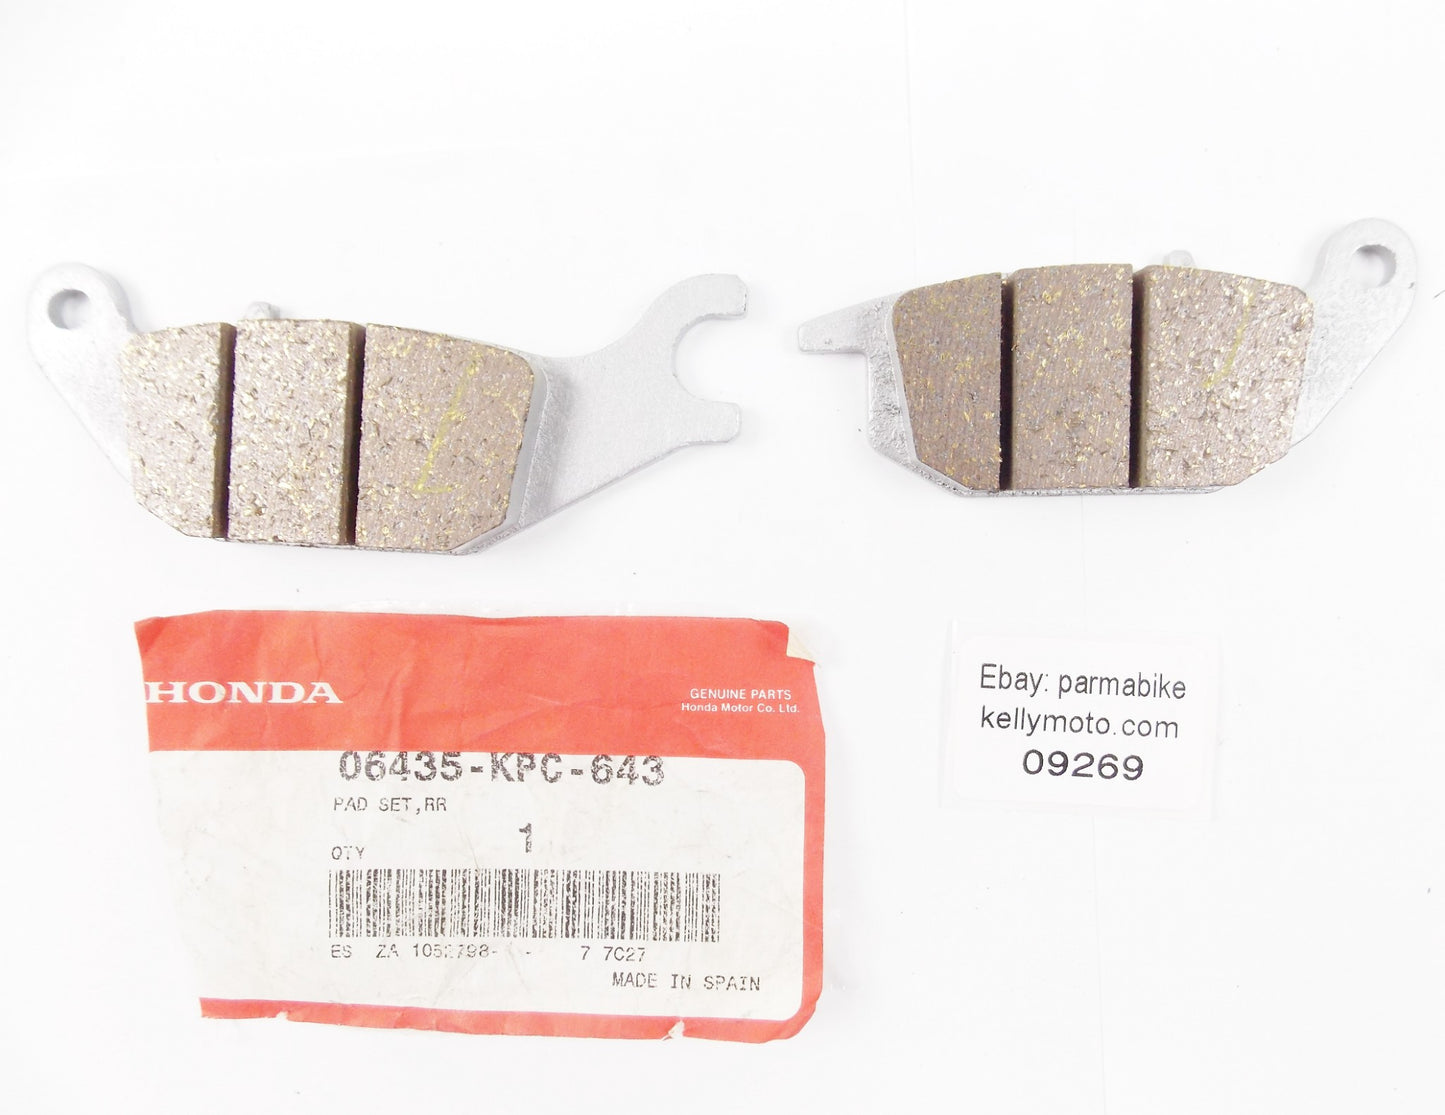 NOS OEM 2001-2011 HONDA XL125V REAR BRAKE PADS SET 06435-KPC-643 - MotoRaider